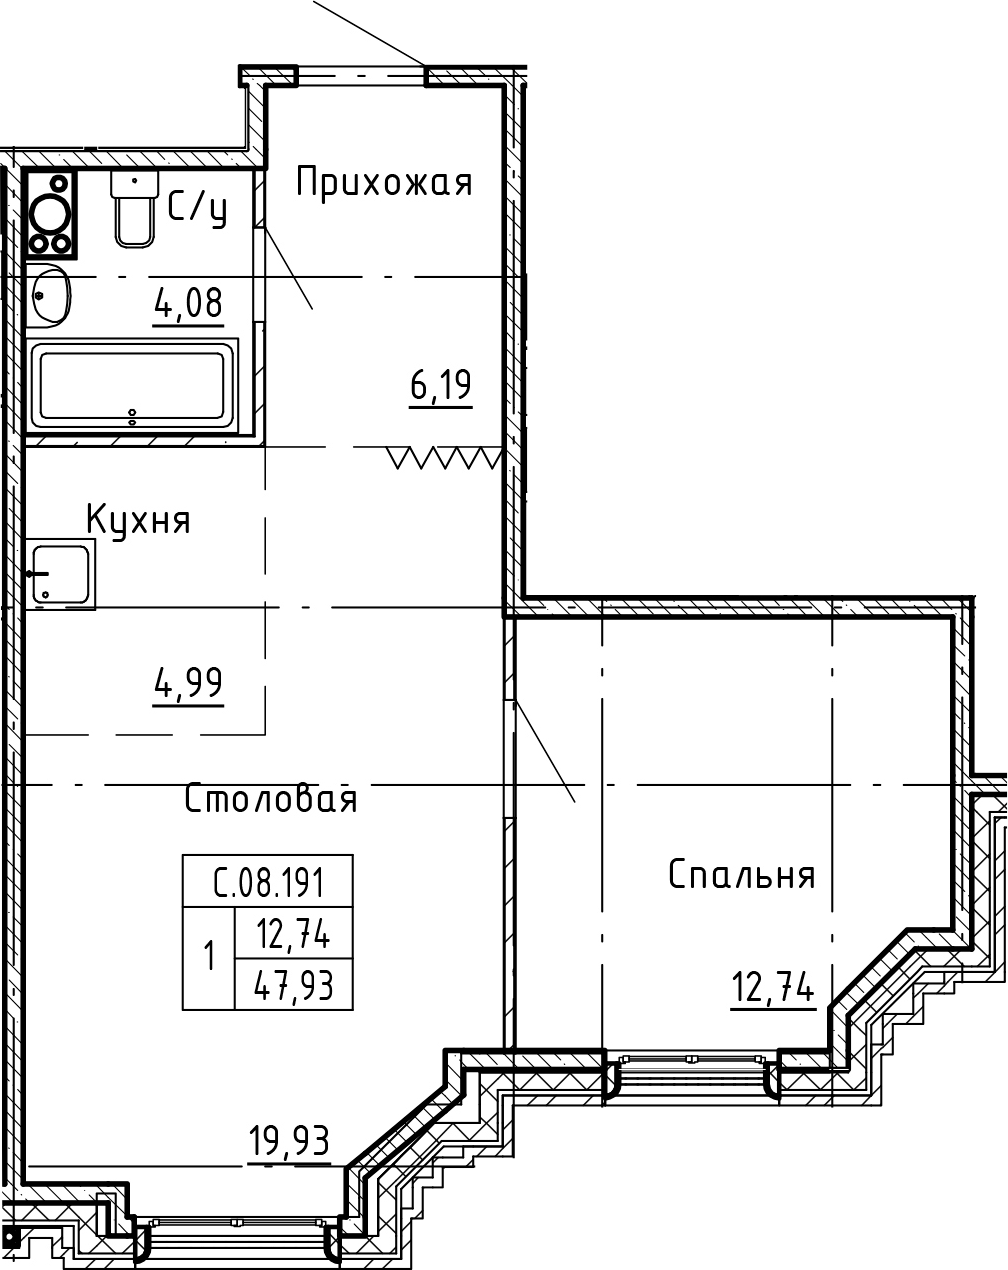 1-комнатная, 47.93 м²– 2